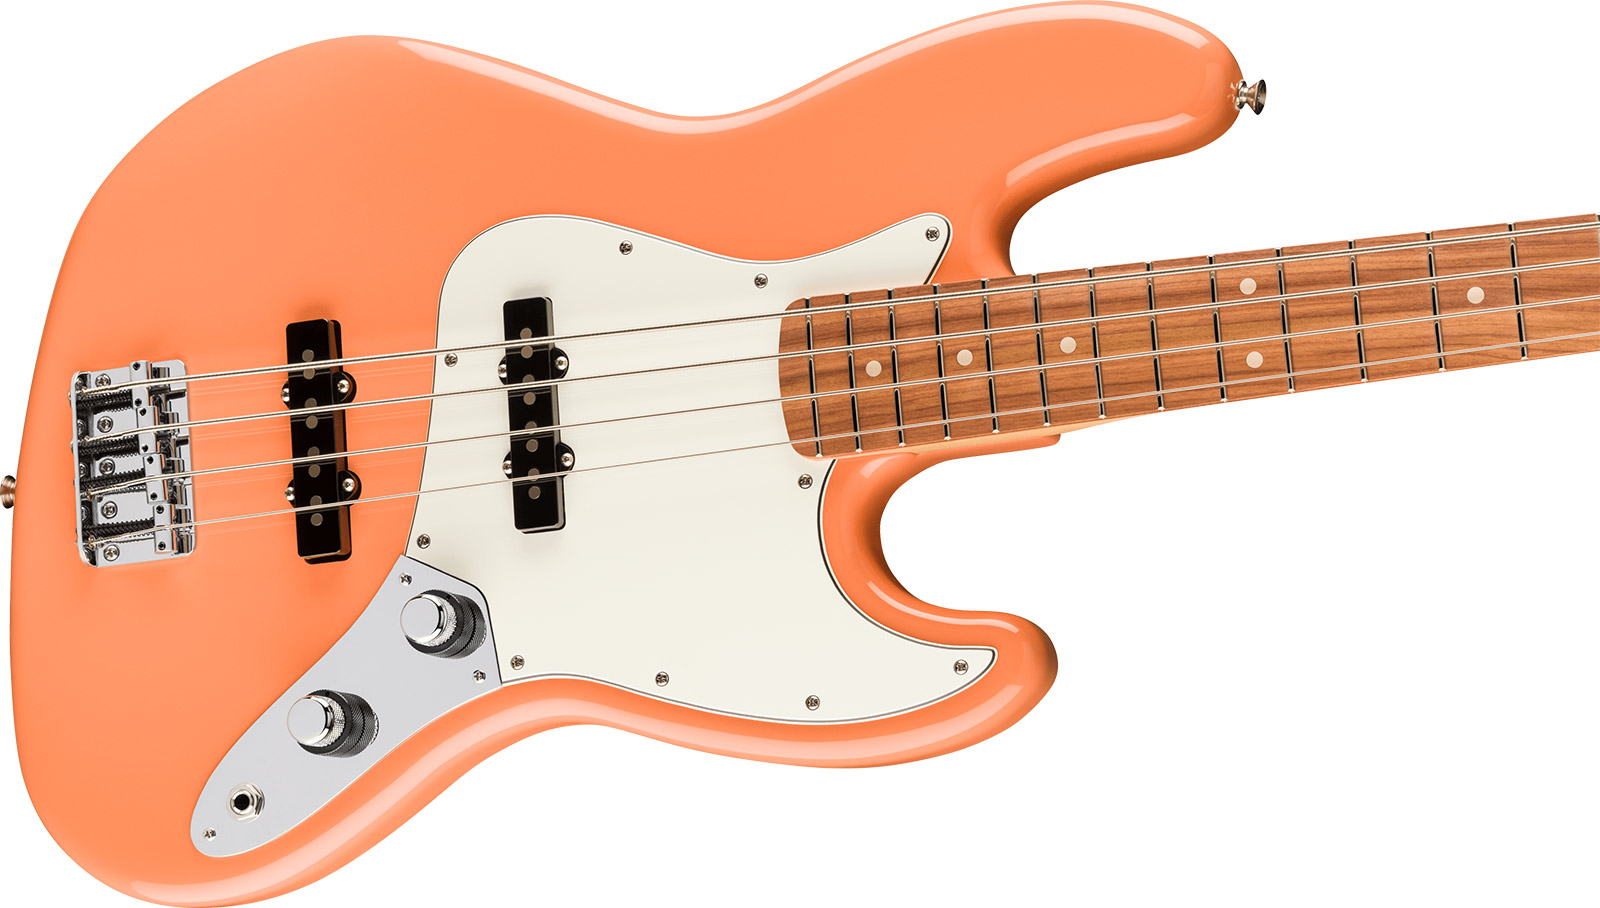 Fender Jazz Bass Player Mex Ltd Pf - Pacific Peach - Solid body elektrische bas - Variation 2